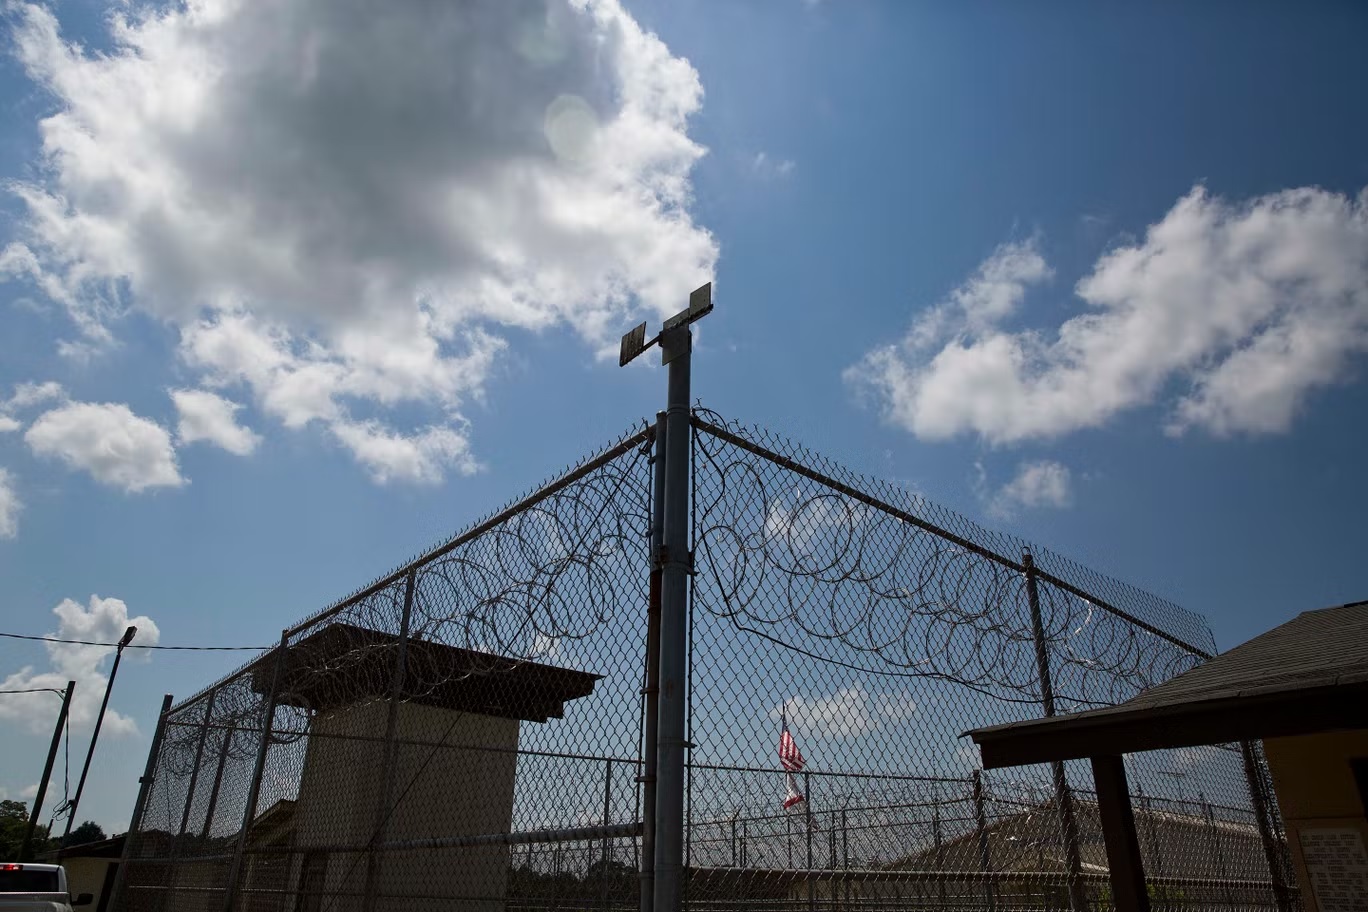 سياج المحيط بمرفق إلمور الإصلاحي في ألاباما. زعم السجناء في الولاية أنهم تعرضوا للتجويع القسري والعمل خلال الإضراب الأخير الذي استمر ثلاثة أسابيع (أ ب)